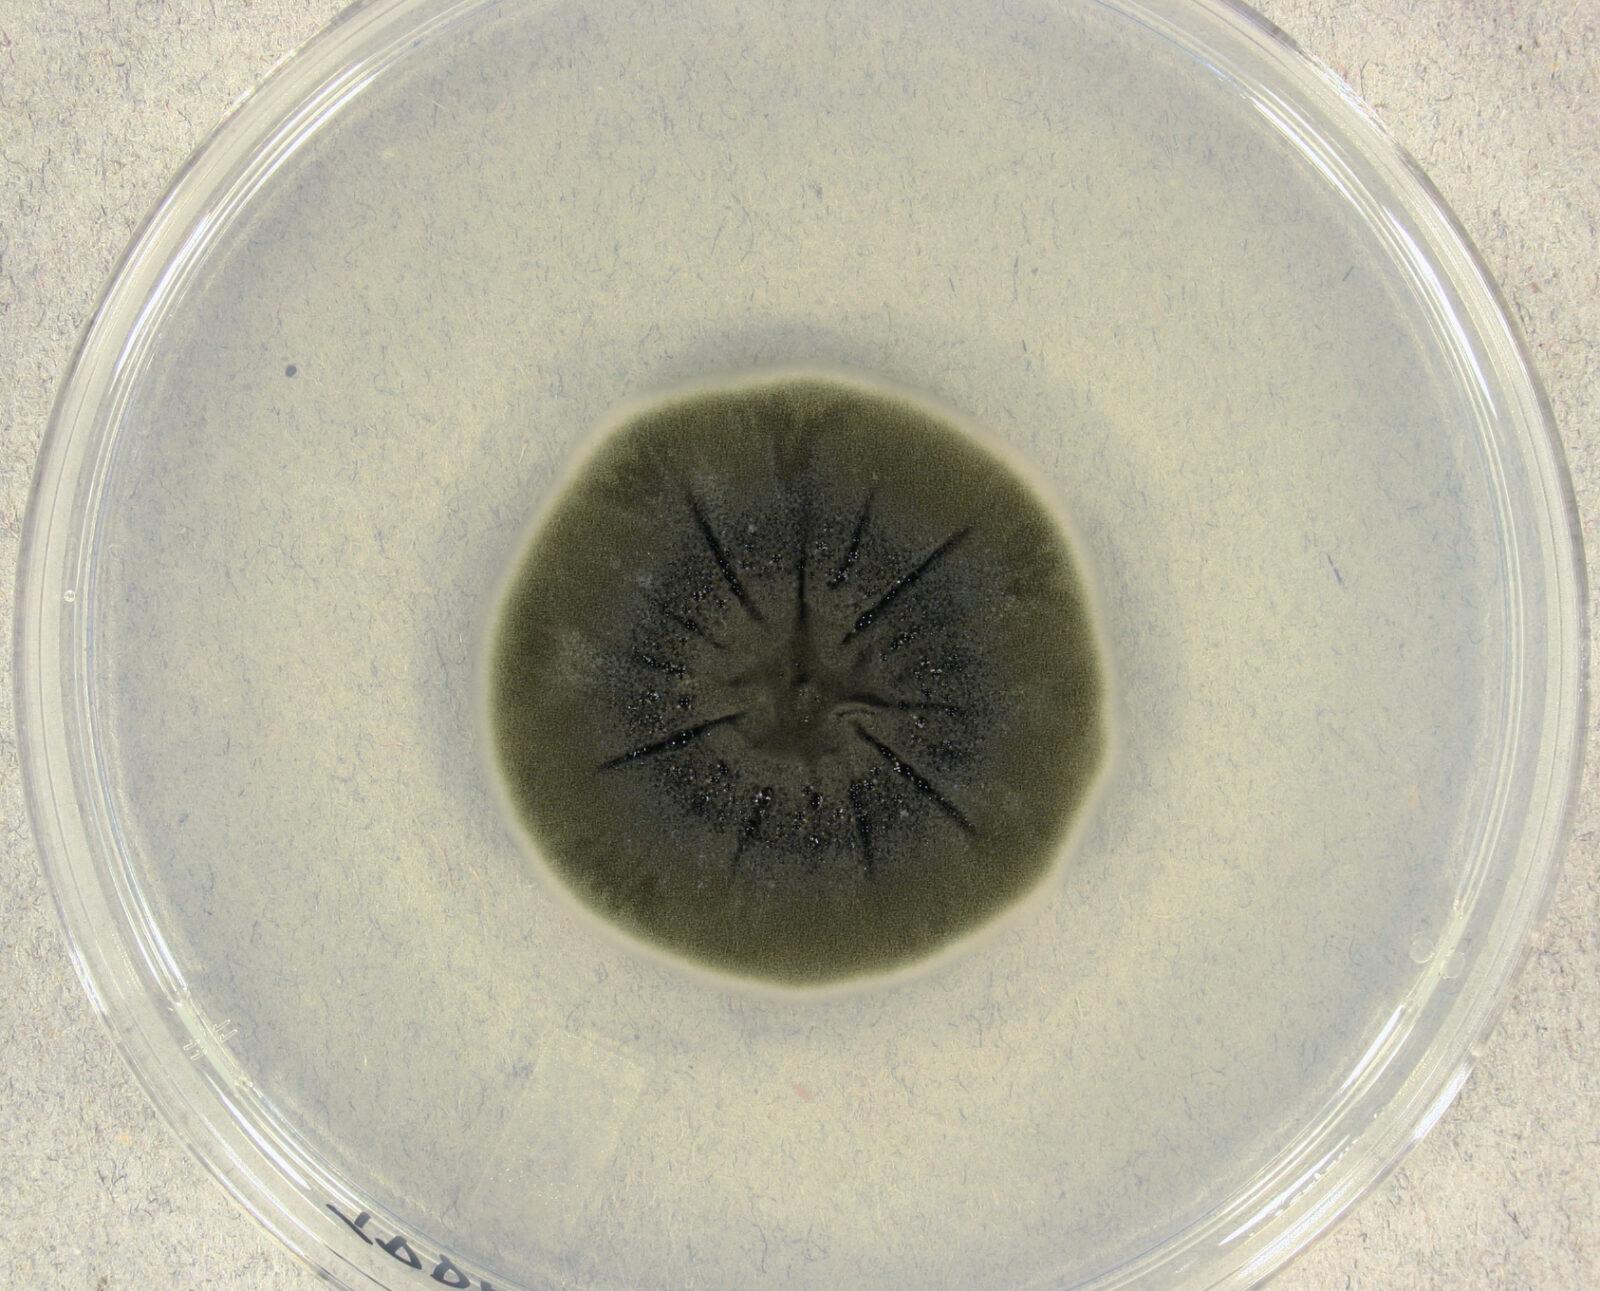 فطر «كلادوسبوريوم سفيروسبيرموم-Cladosporium sphaerospermum»